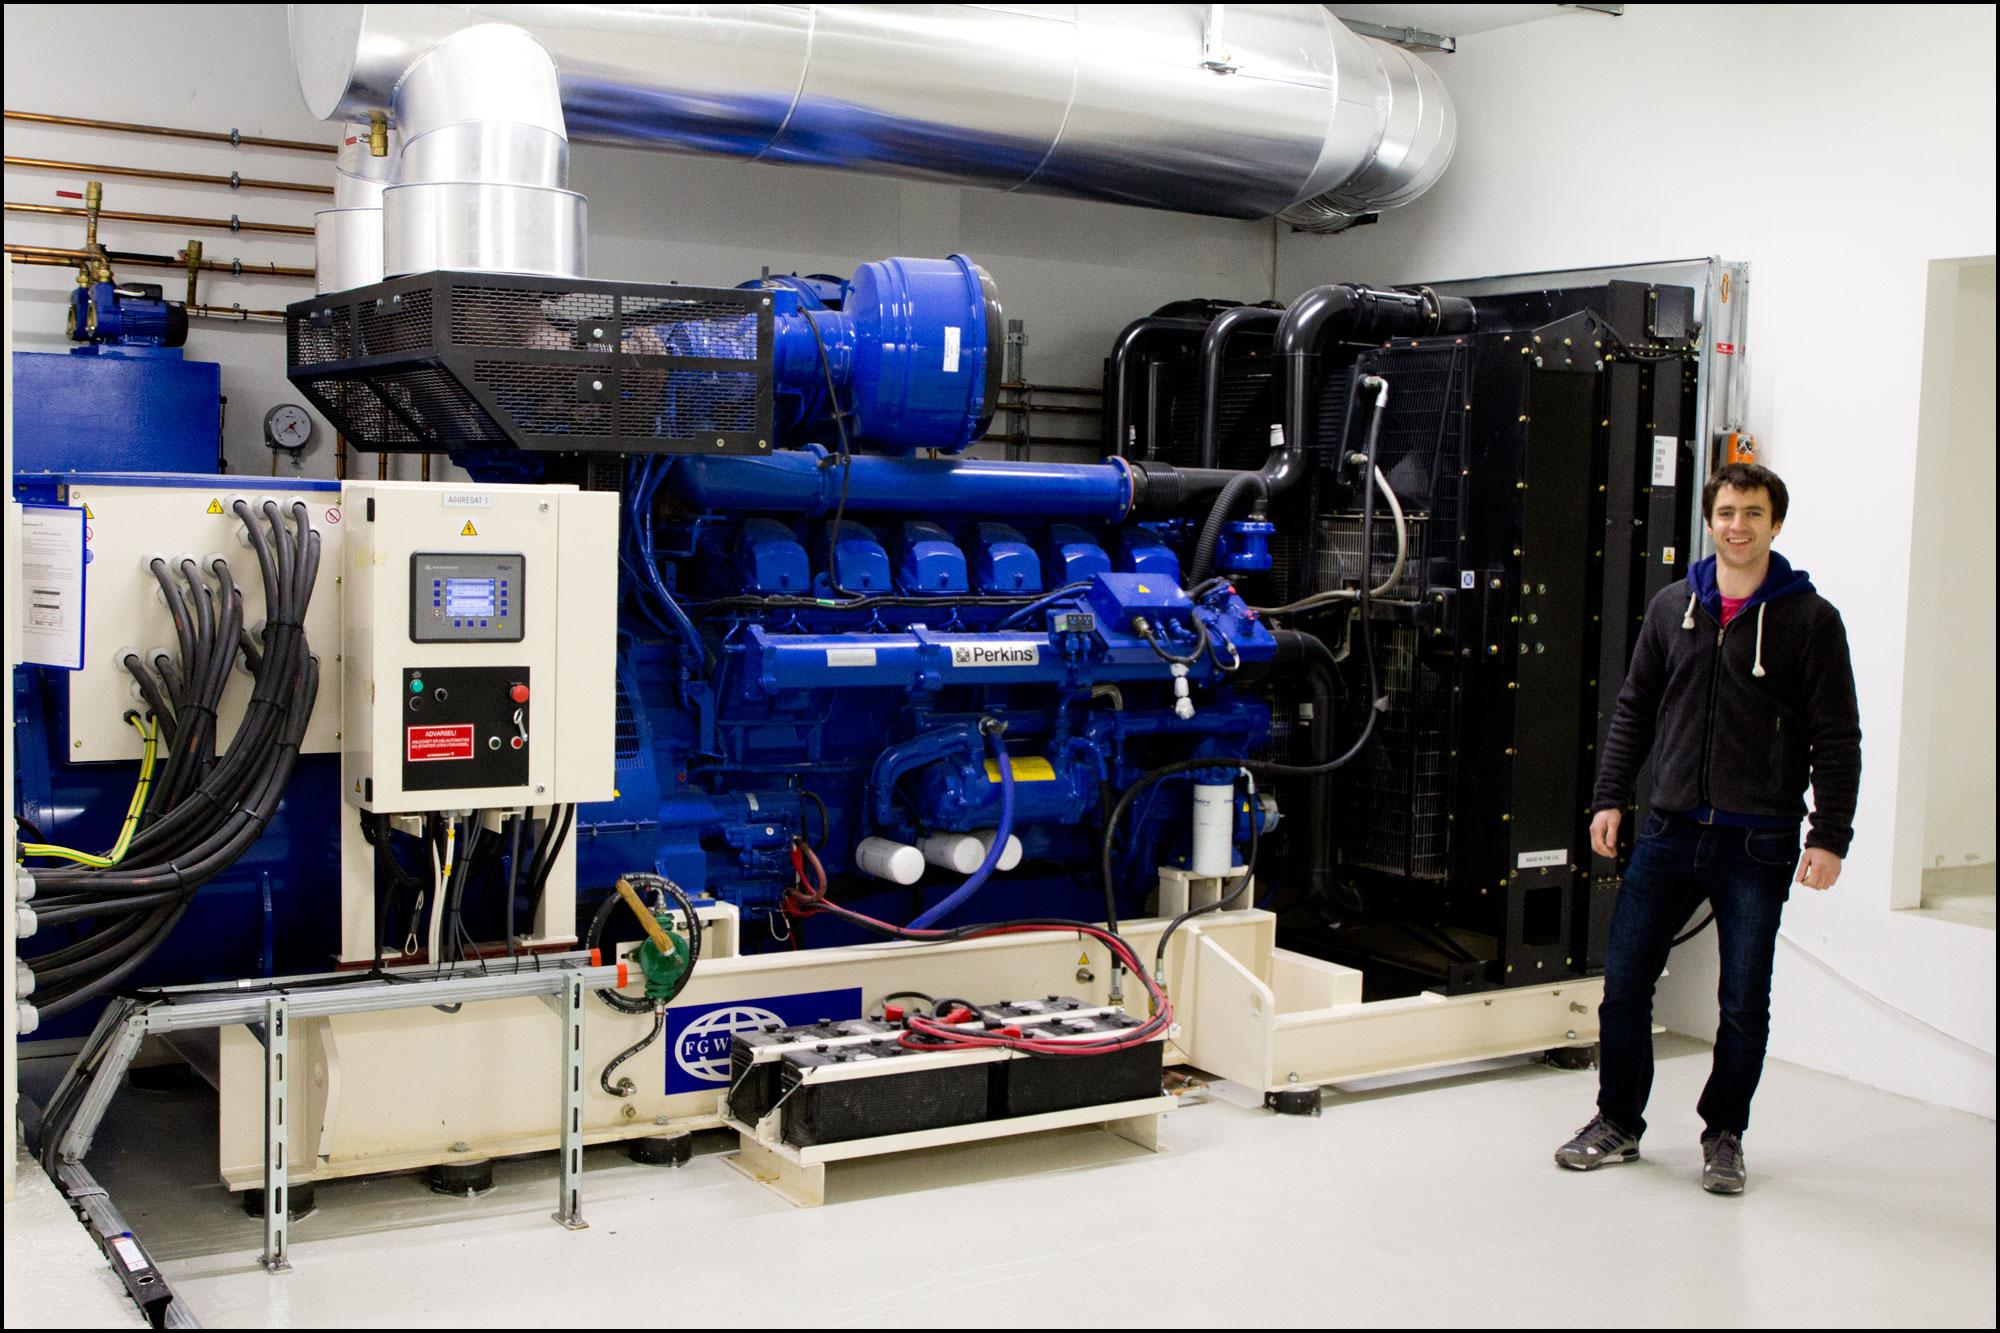 Teknisk sjef i Mediehuset Tek, Amund Espelien, står ved siden av dieselgeneratoren.Foto: Jørgen Elton Nilsen, Hardware.no